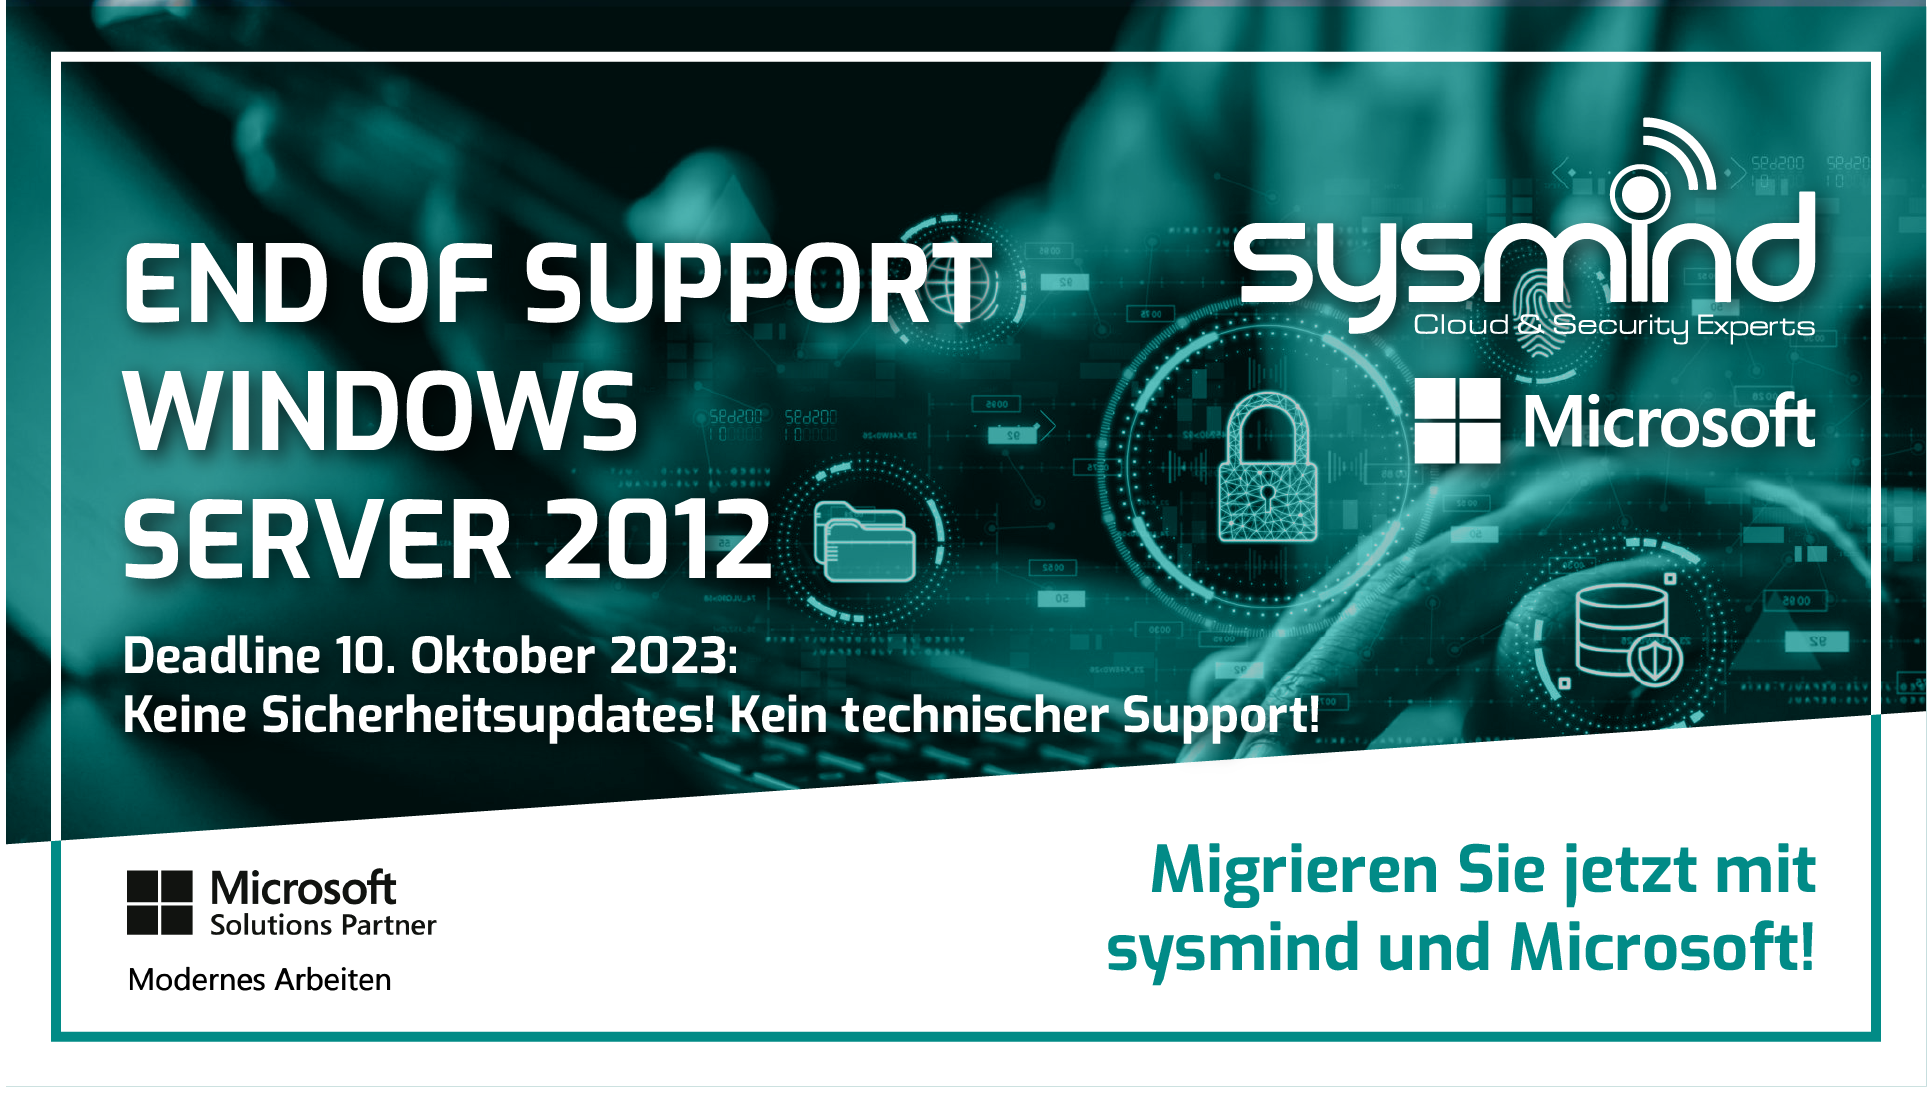 Support für Windows Server 2012 endet